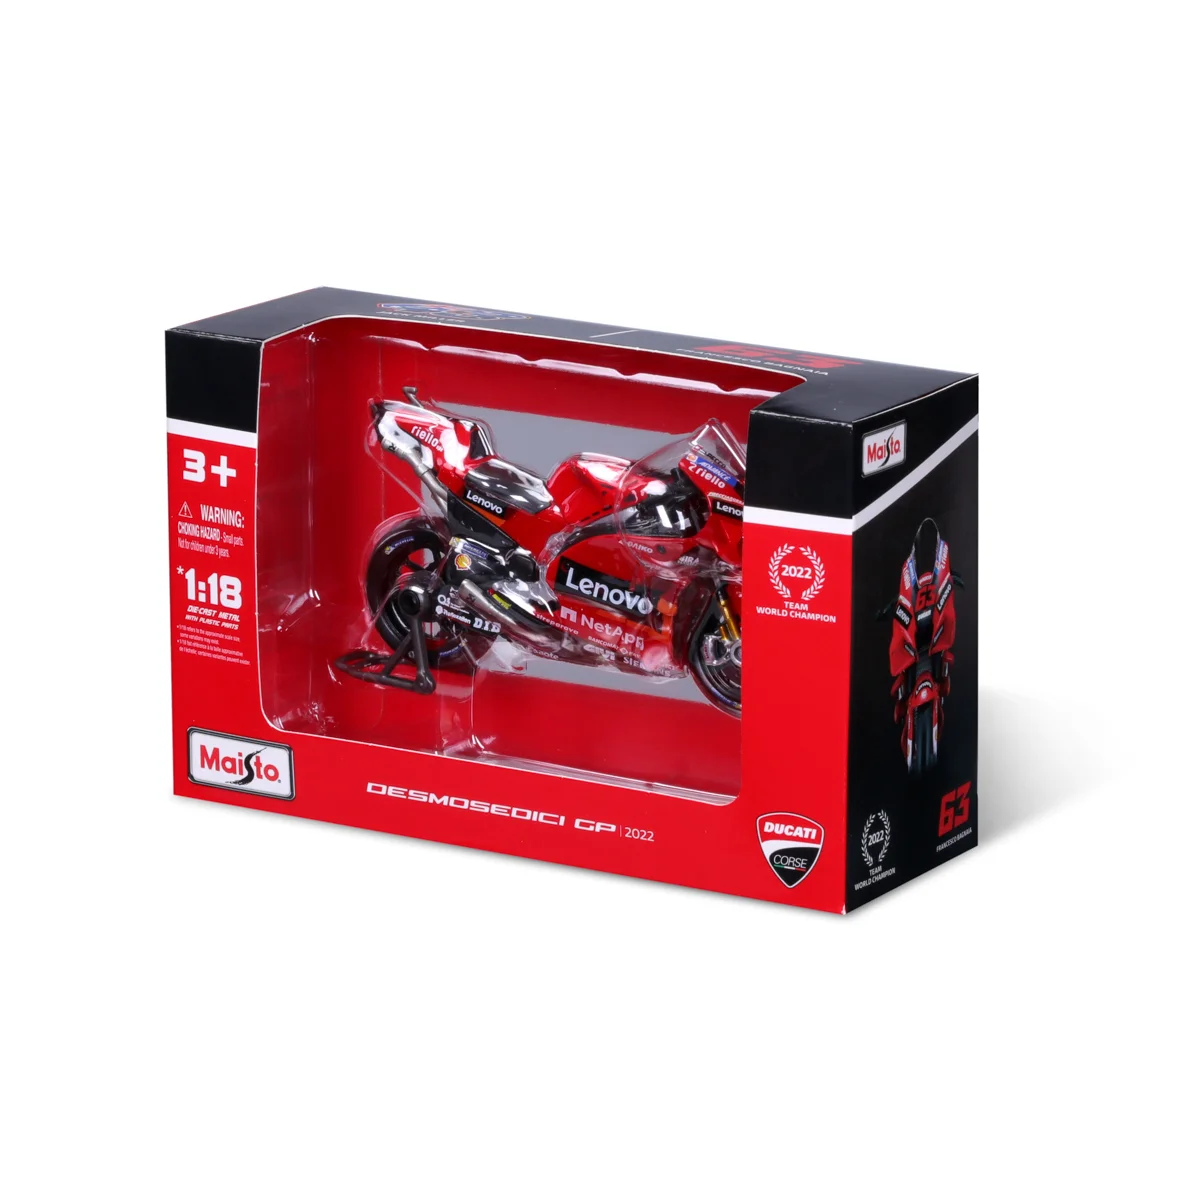 Maisto - Motocykl, Ducati Lenovo team 2022, (#43 Jack Miller), 1:18